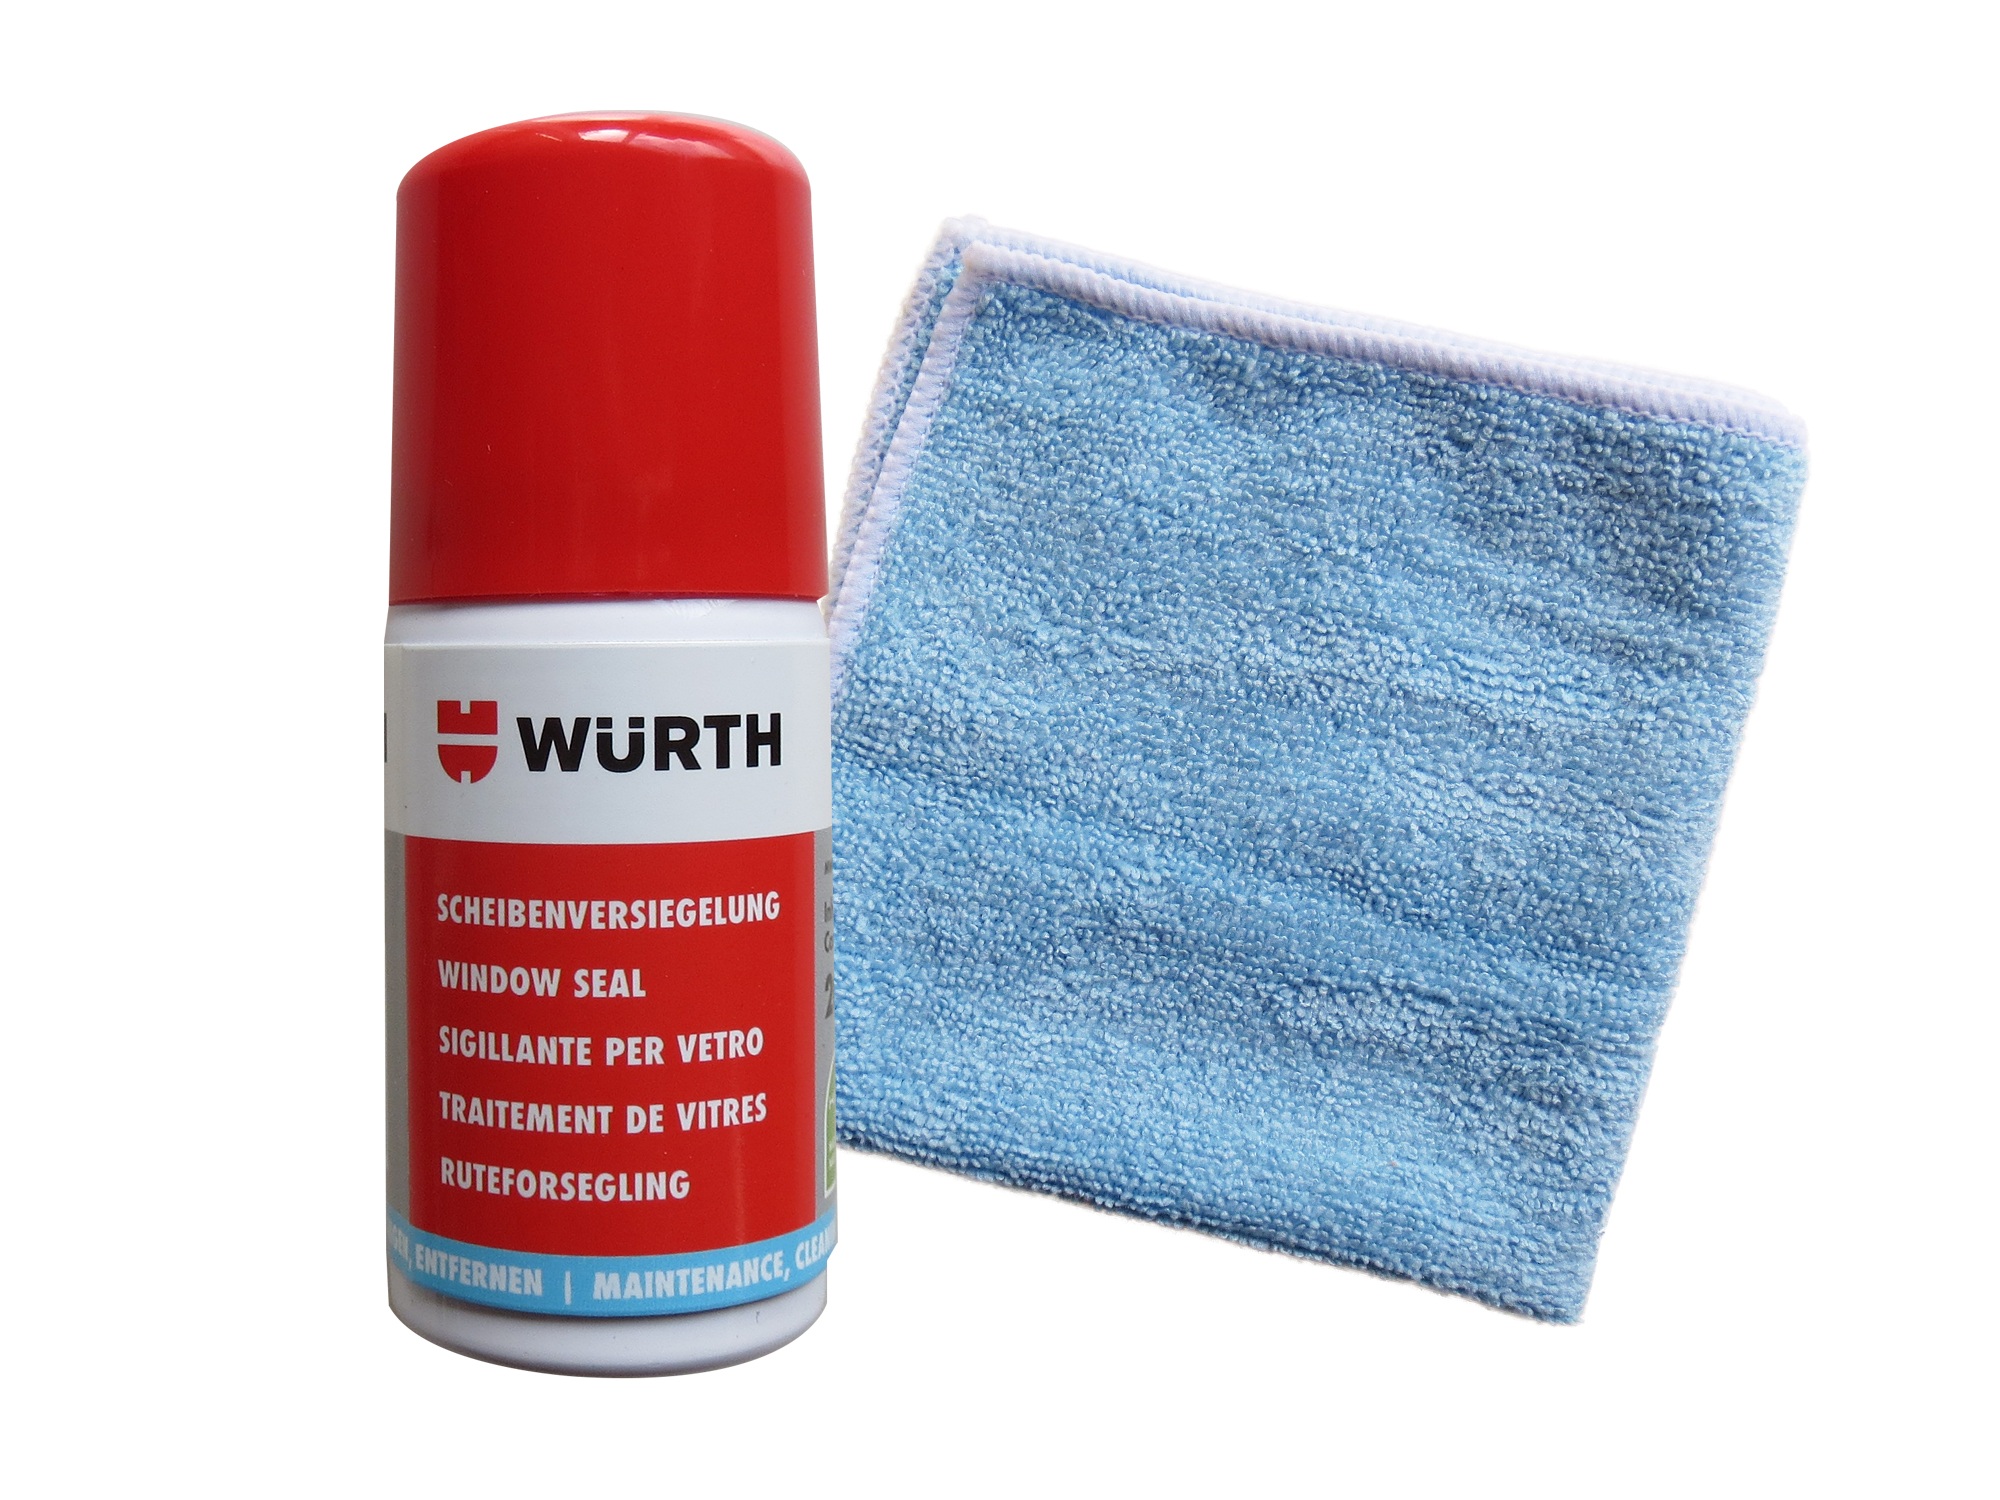 WÜRTH- Scheibenversiegelung + 1 Microfasertuch Classic Gratis